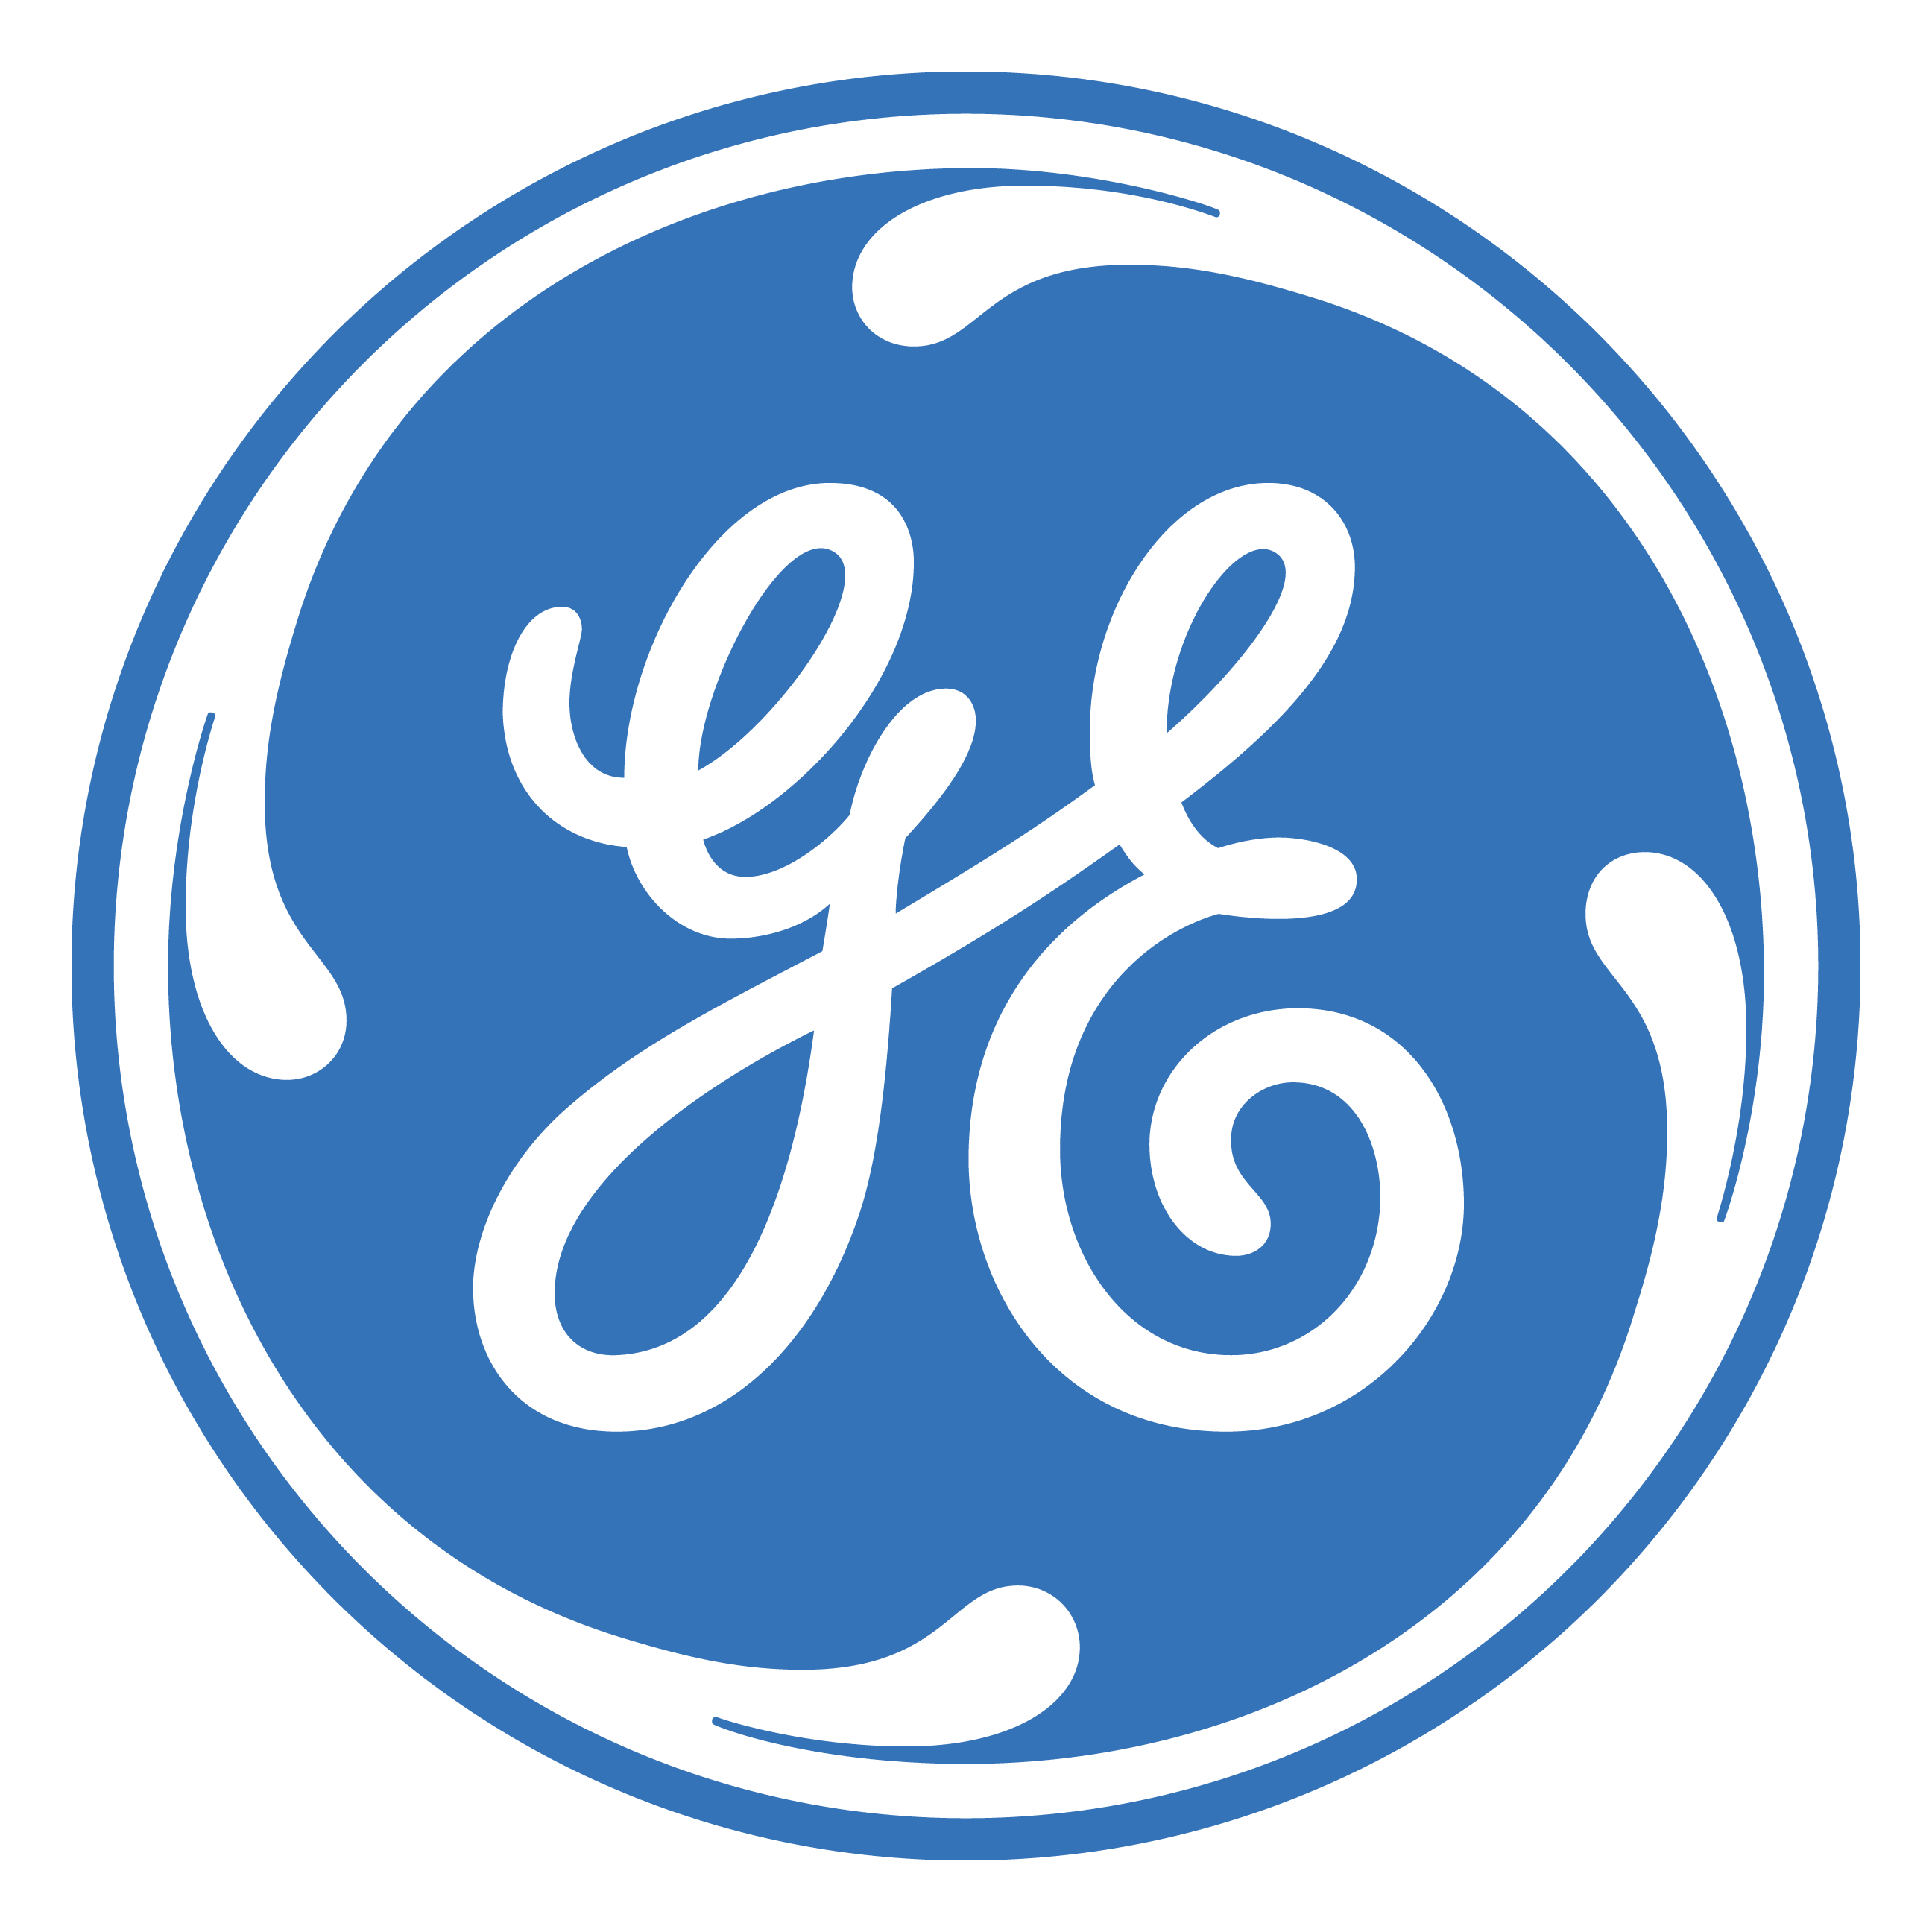 GE Logo PNG Image